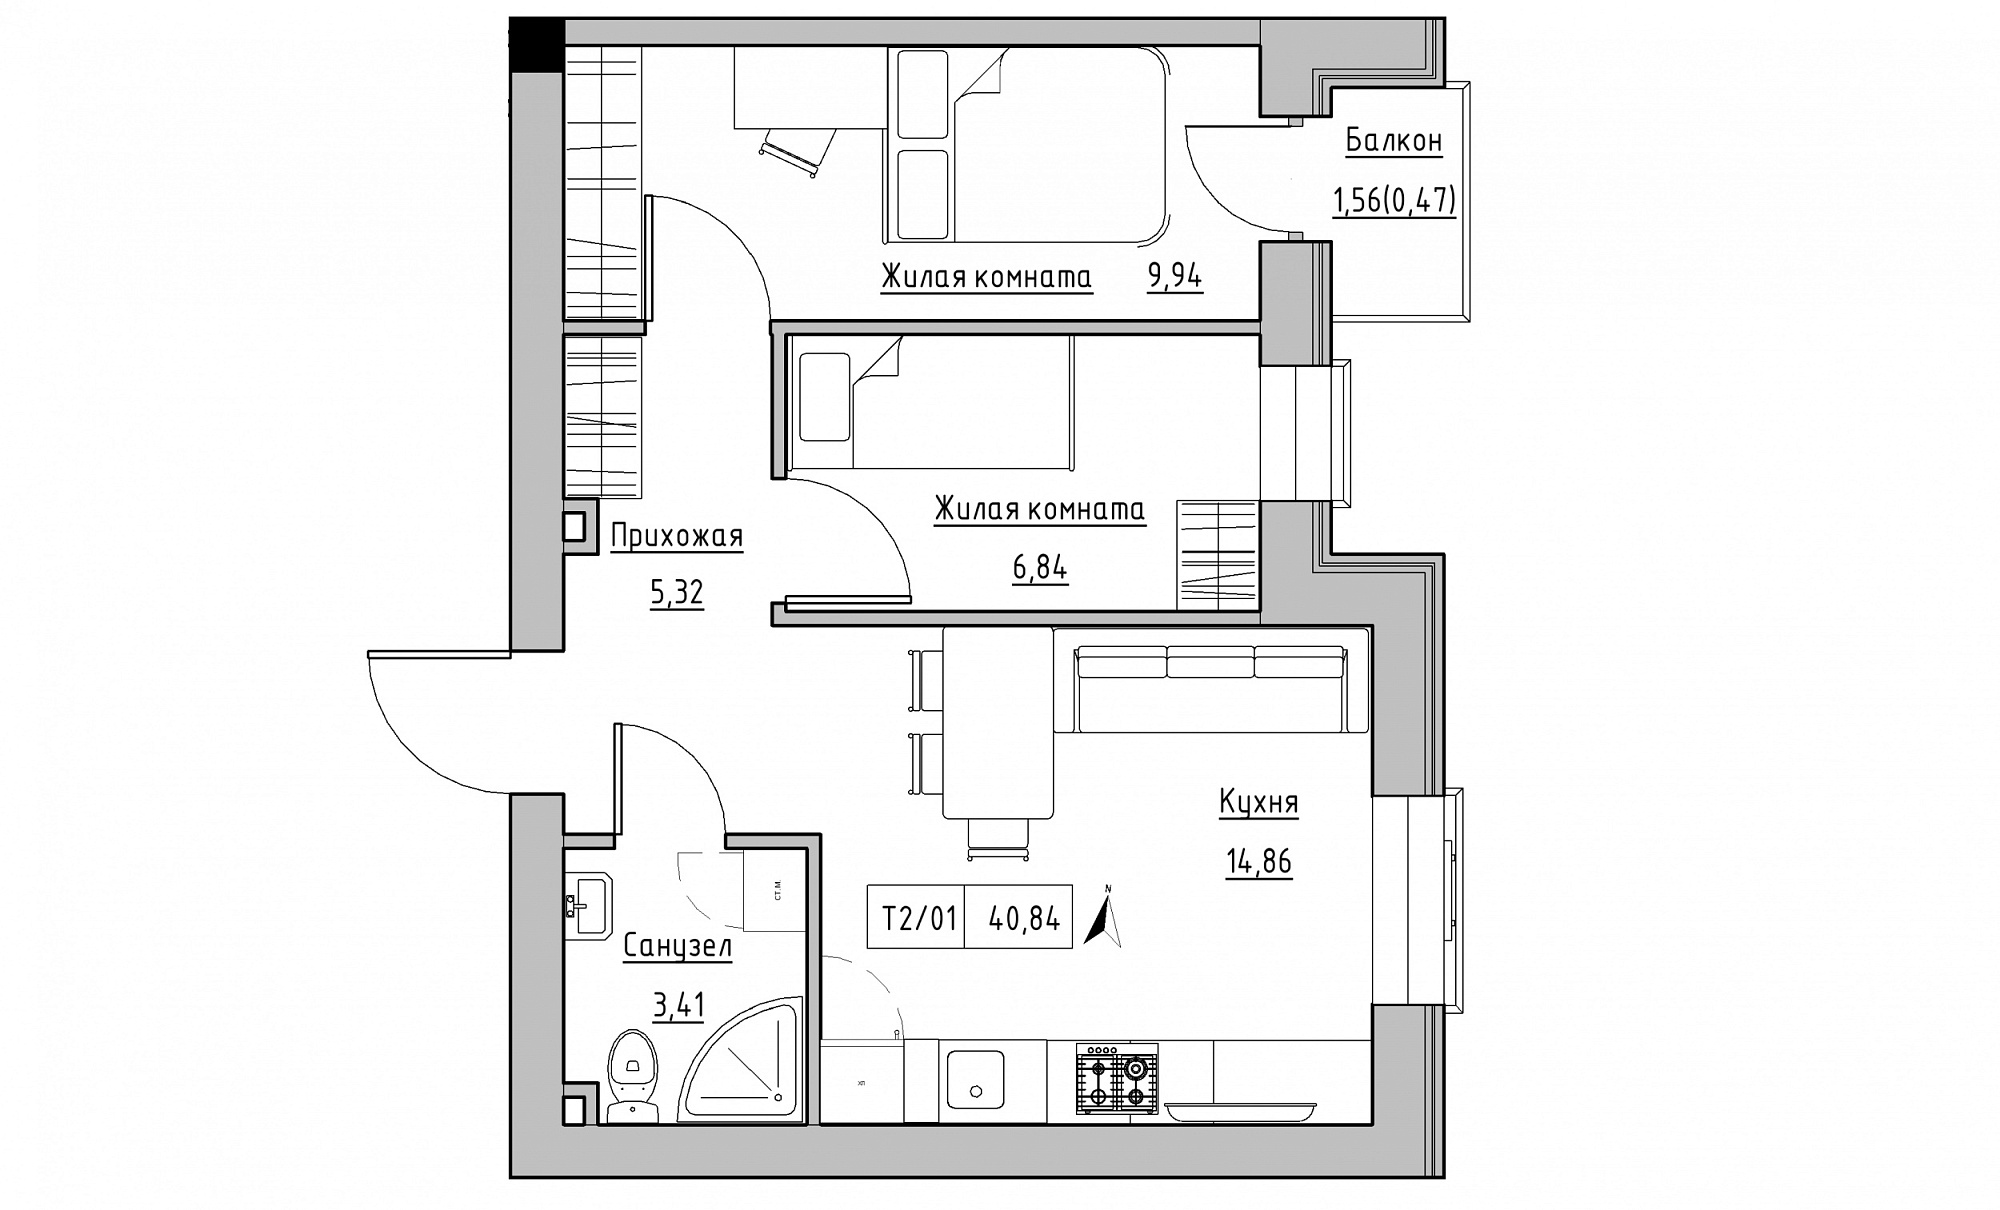 Планировка 2-к квартира площей 40.84м2, KS-015-04/0006.